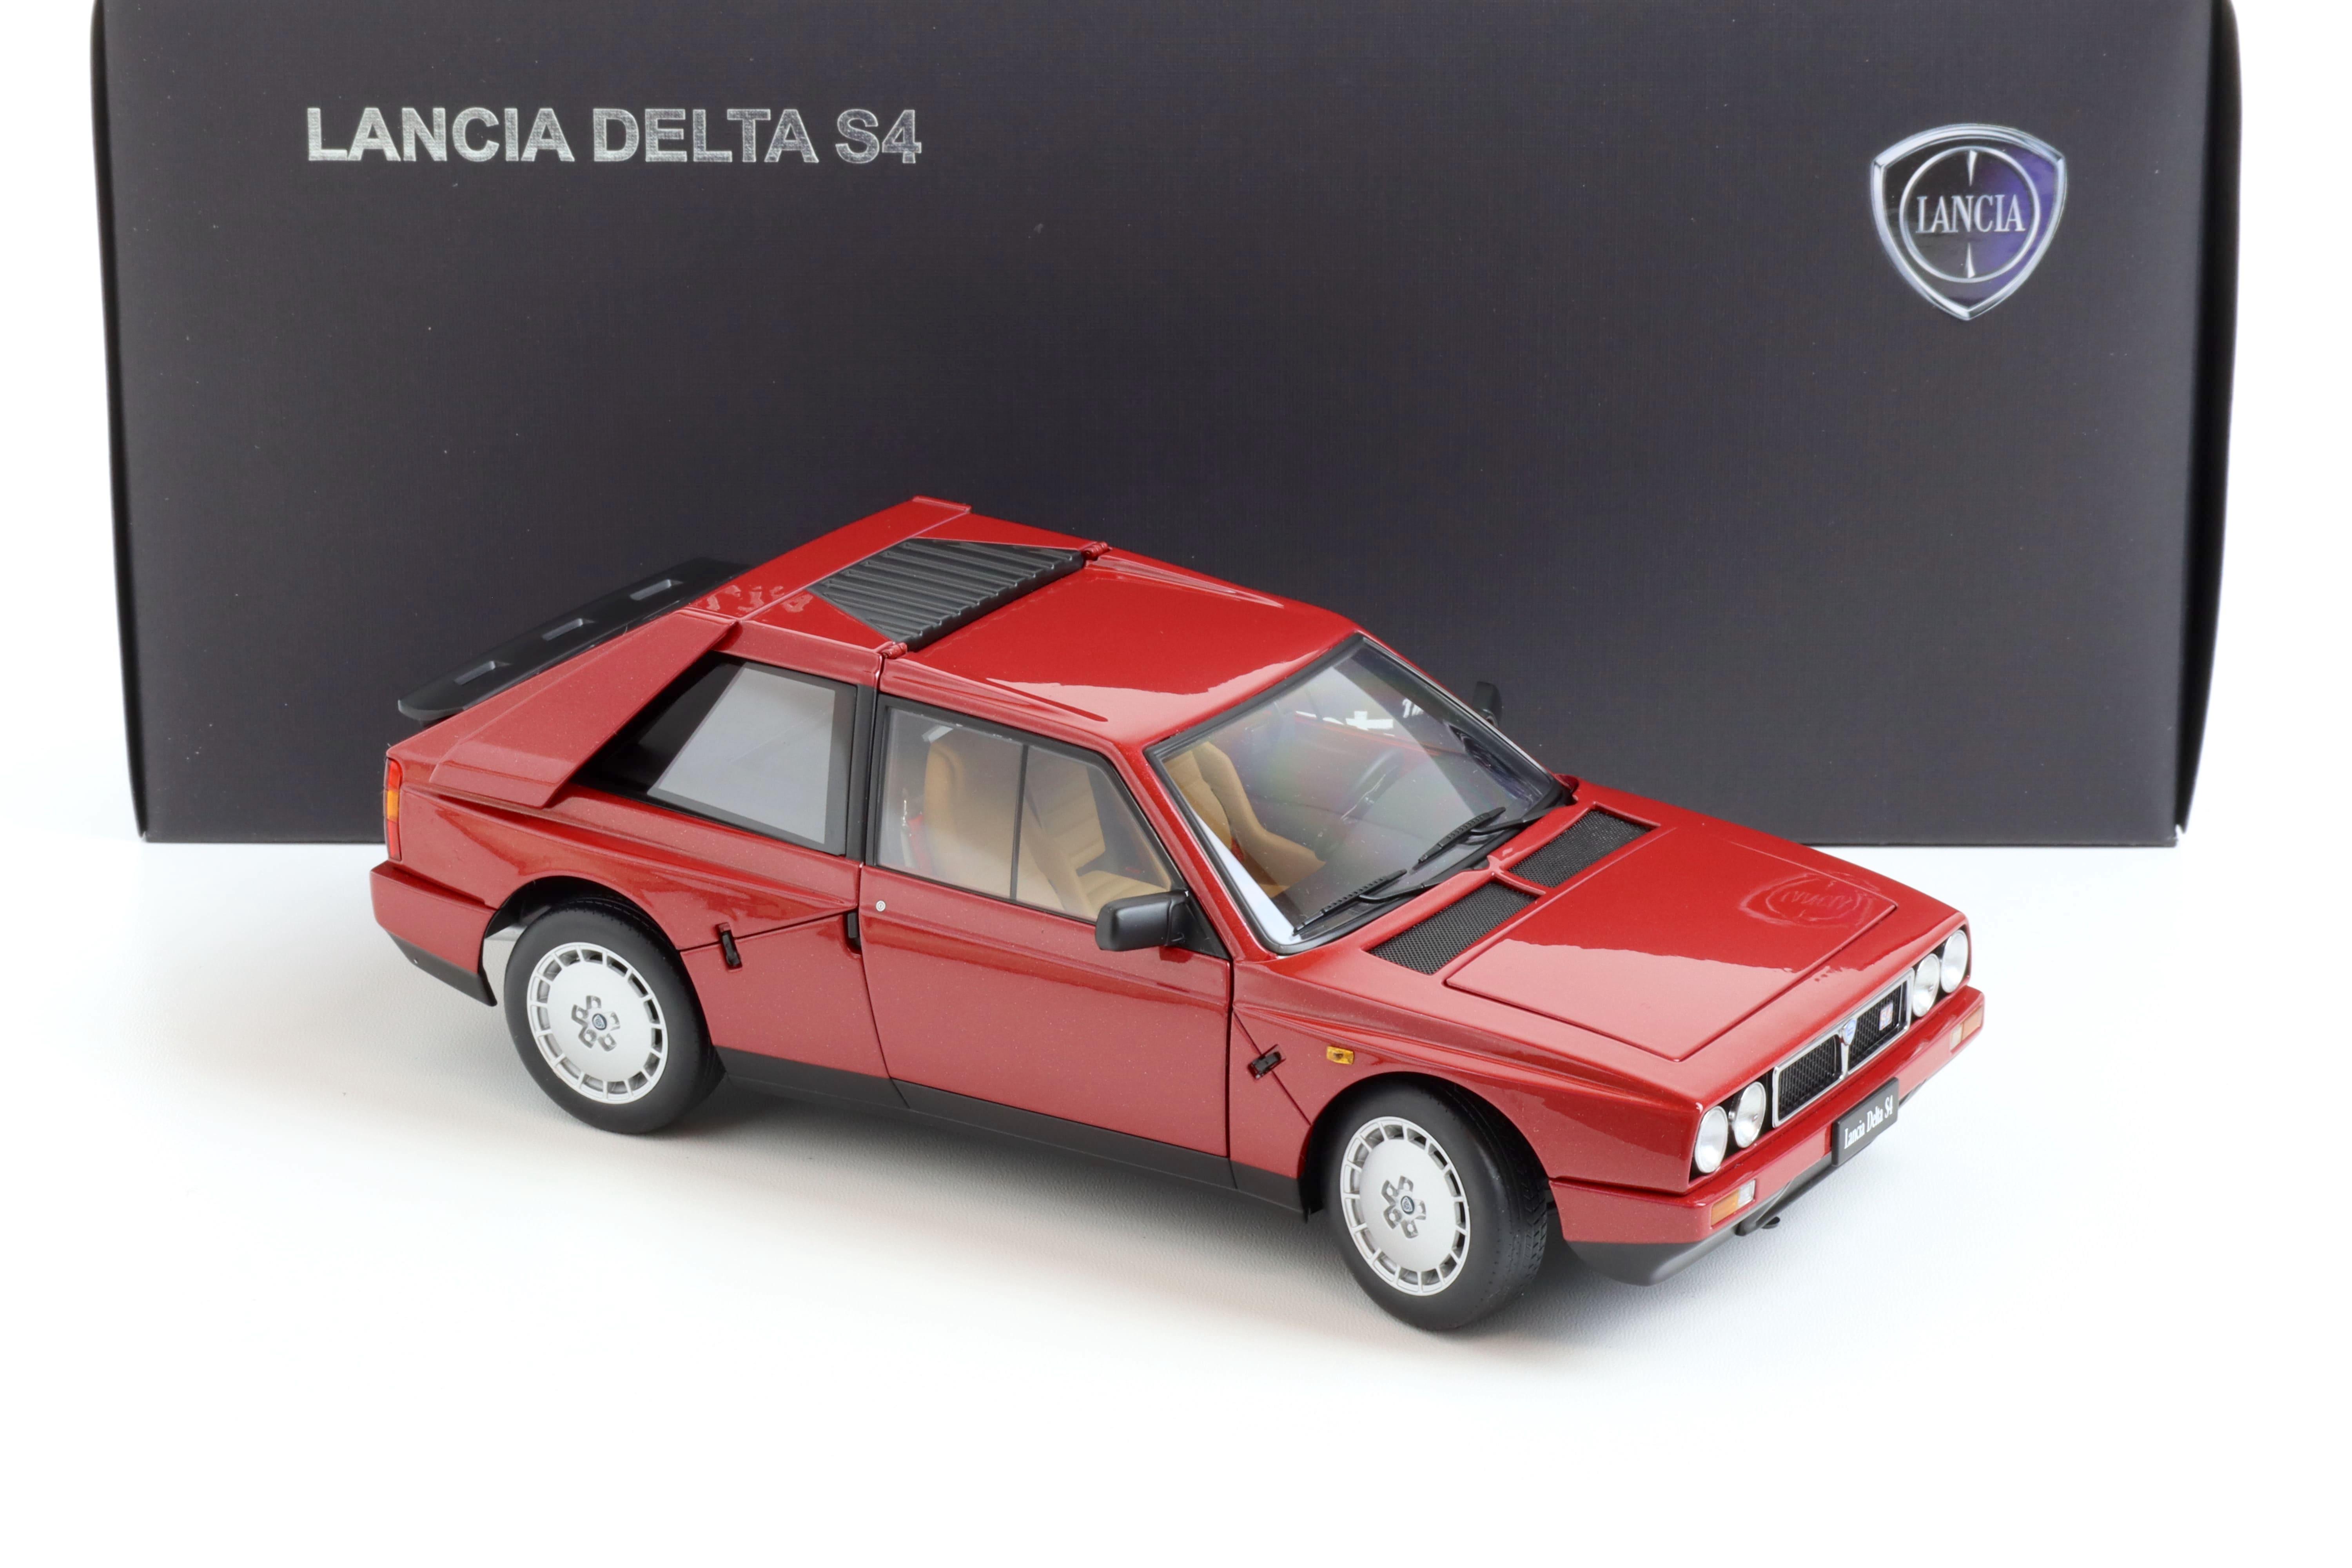 1:18 AUTOart Lancia Delta S4 red 1985 